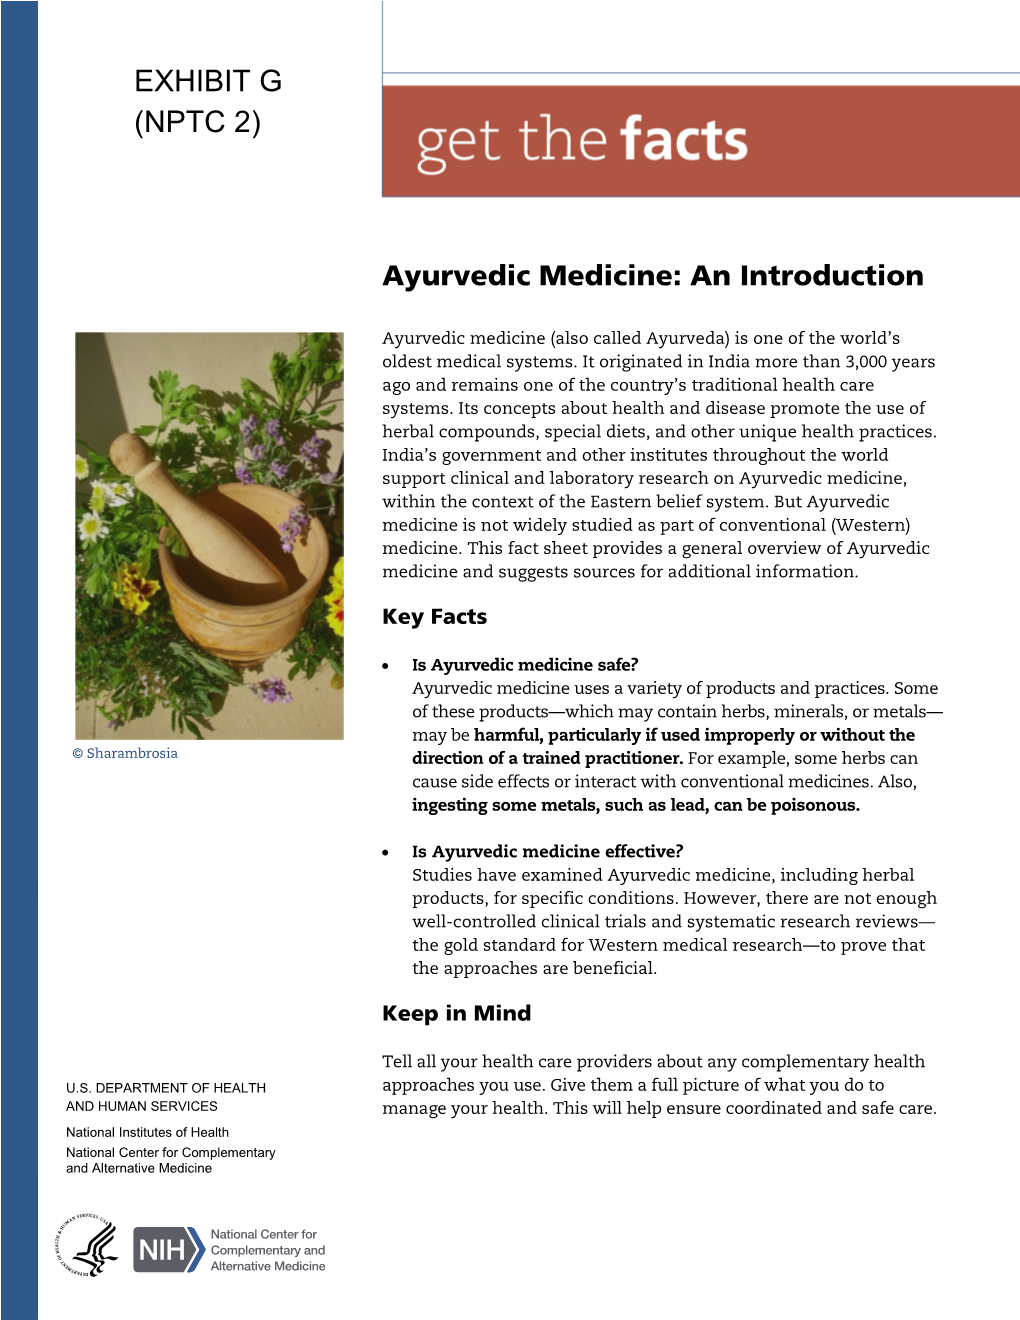 Ayurvedic Medicine: an Introduction